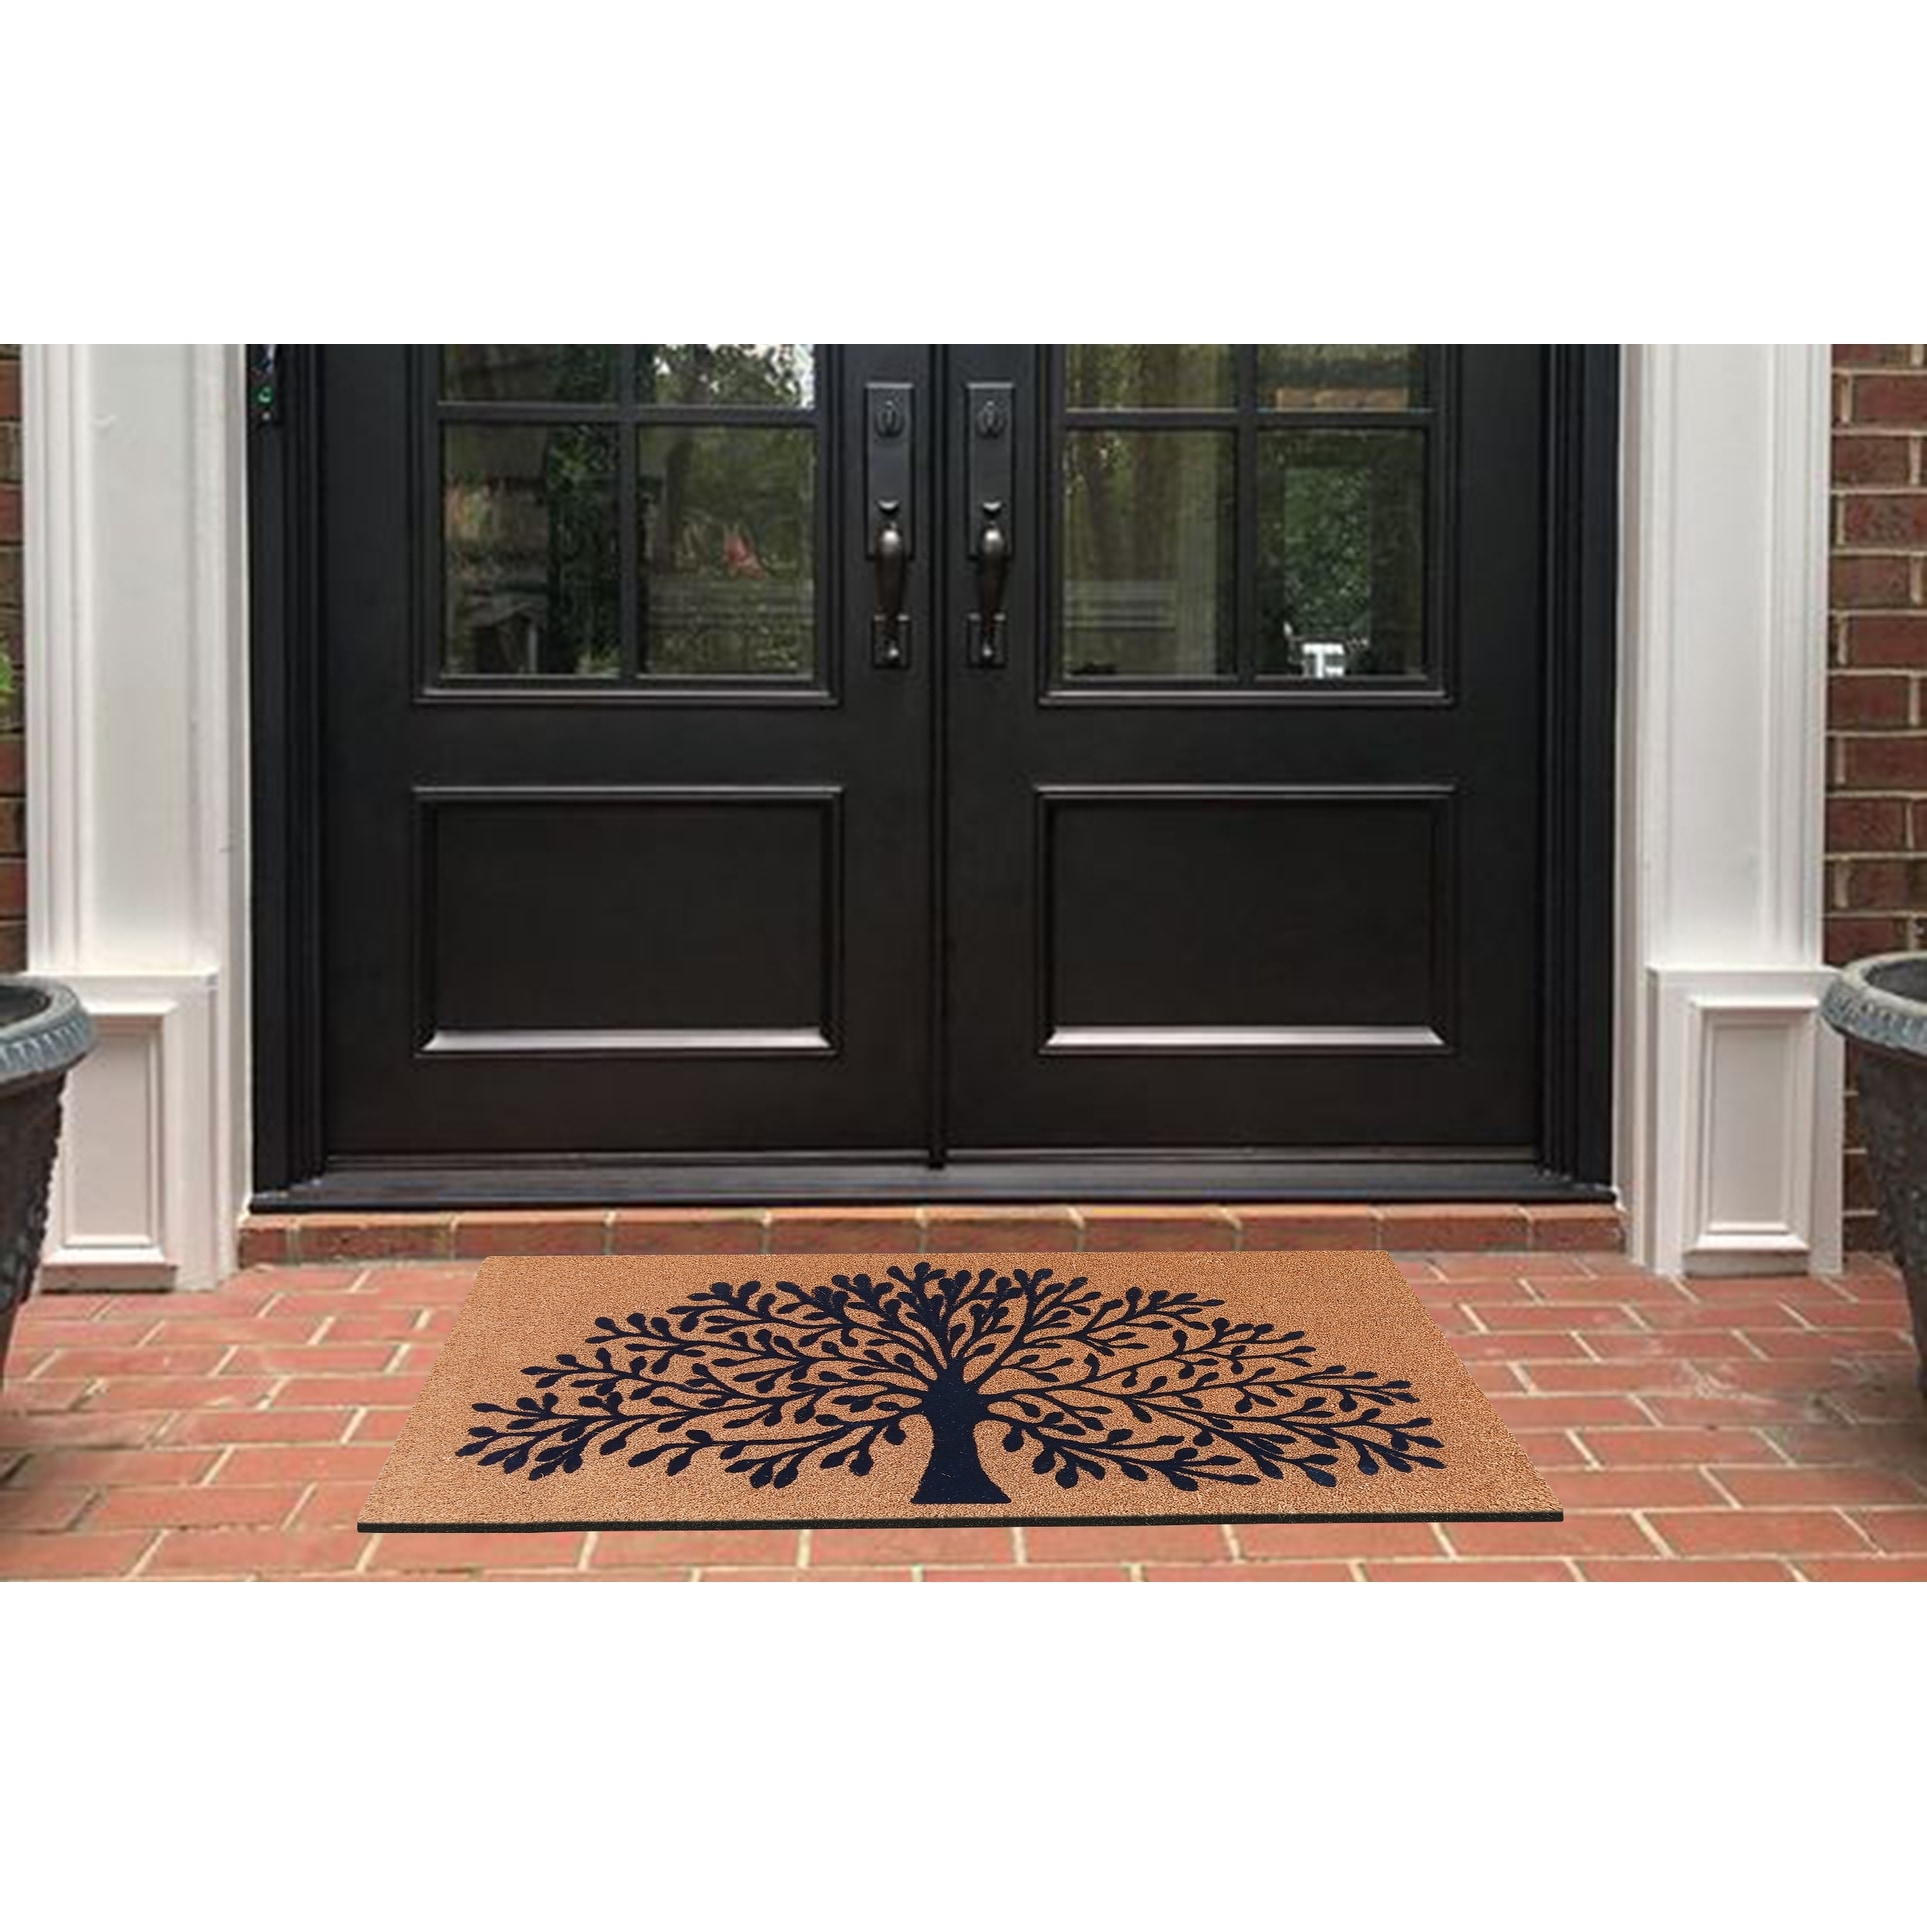 https://ak1.ostkcdn.com/images/products/is/images/direct/f25f63828b434233aafccad45d5fe57242e59ae3/A1HC-Entrance-Door-Mats%2C-Durable-Large-Outdoor-Rug%2C-Non-Slip%2C-Flock-Doormat%2C-Heavy-Duty-Door-Mat%2C-Indoor-Outdoor-Front-Door.jpg